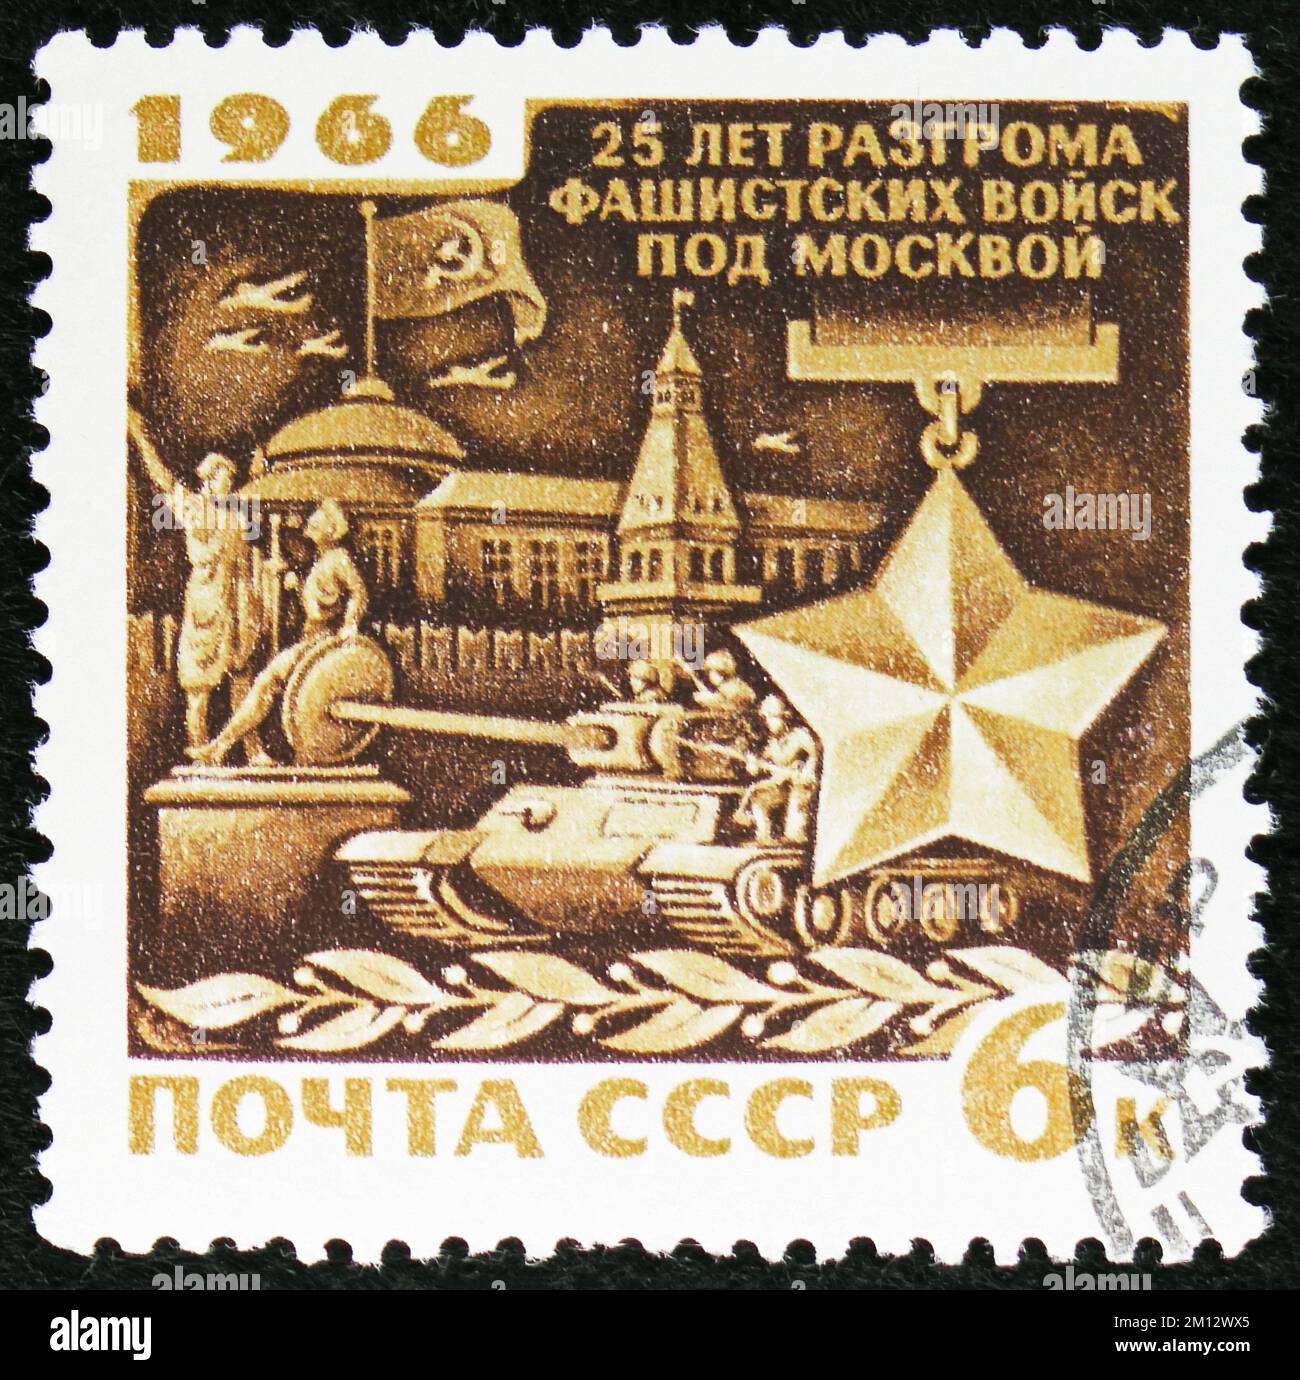 MOSCOU, RUSSIE - 29 OCTOBRE 2022 : timbre-poste imprimé en URSS montre Moscou et Médaille, 25th anniversaire de la bataille de la série Mosccow, vers 1966 Banque D'Images